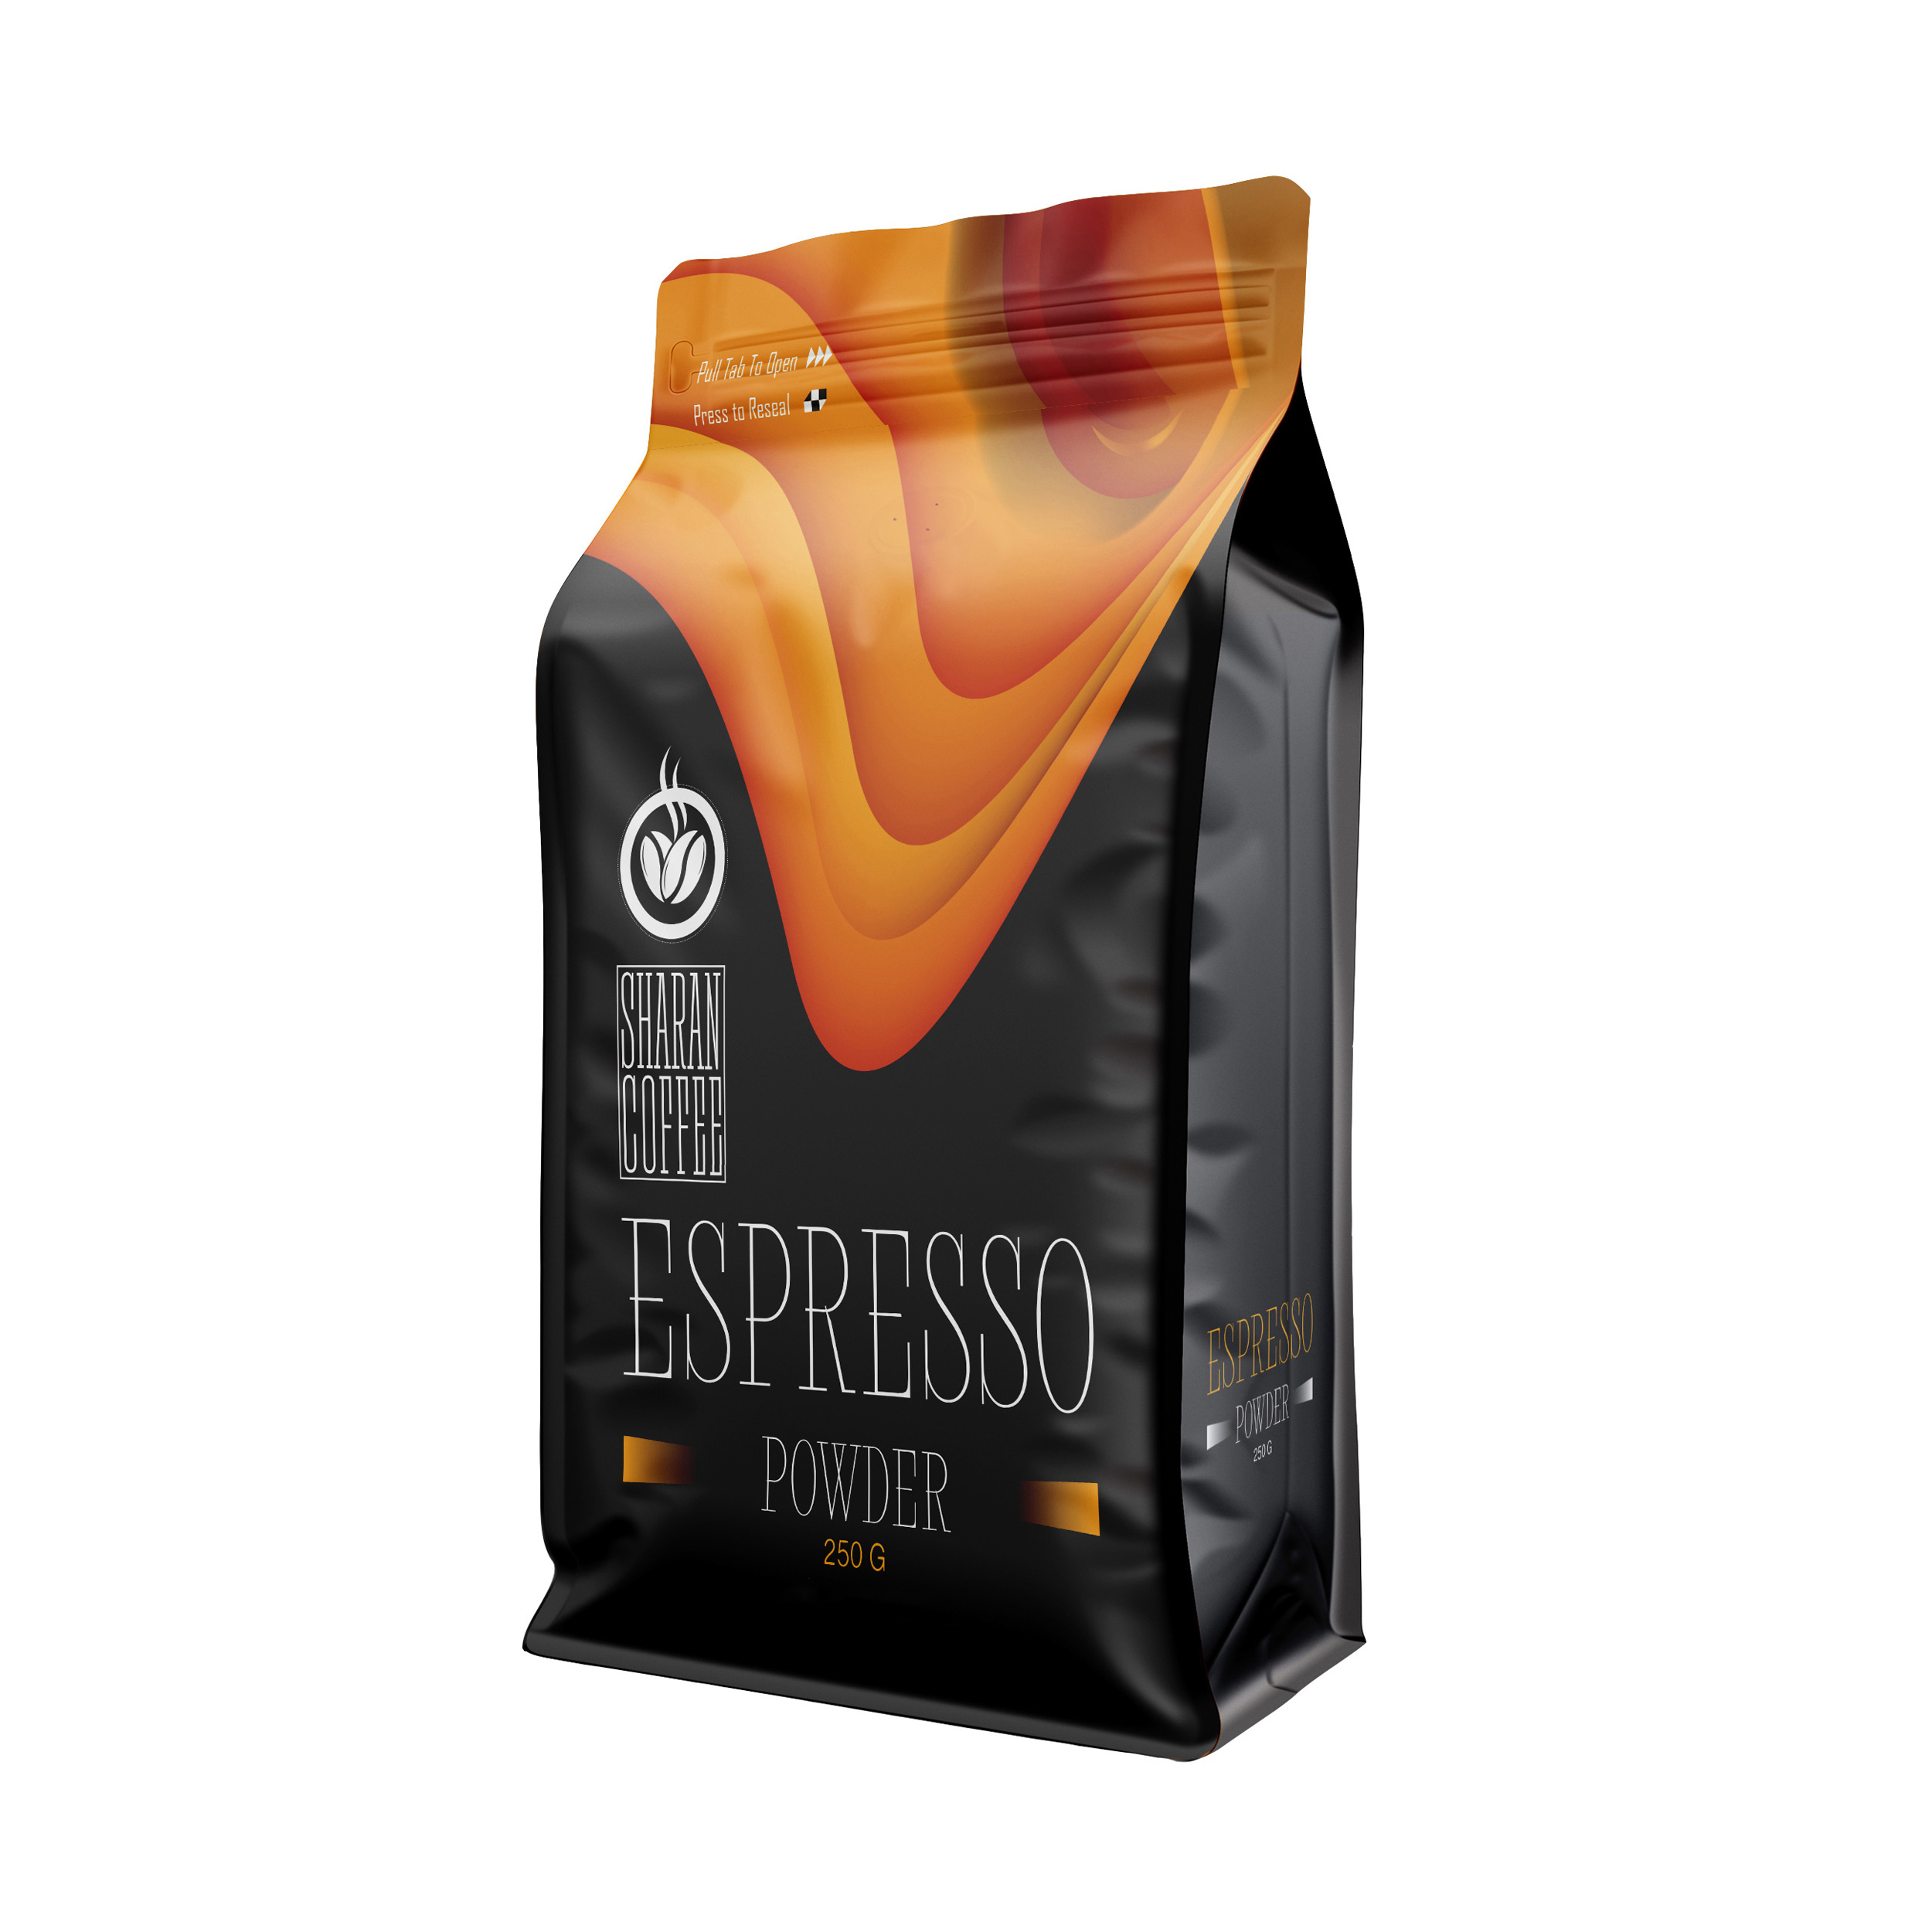  قهوه اسپرسو کلمبیاعربیکا شاران - 250 گرم